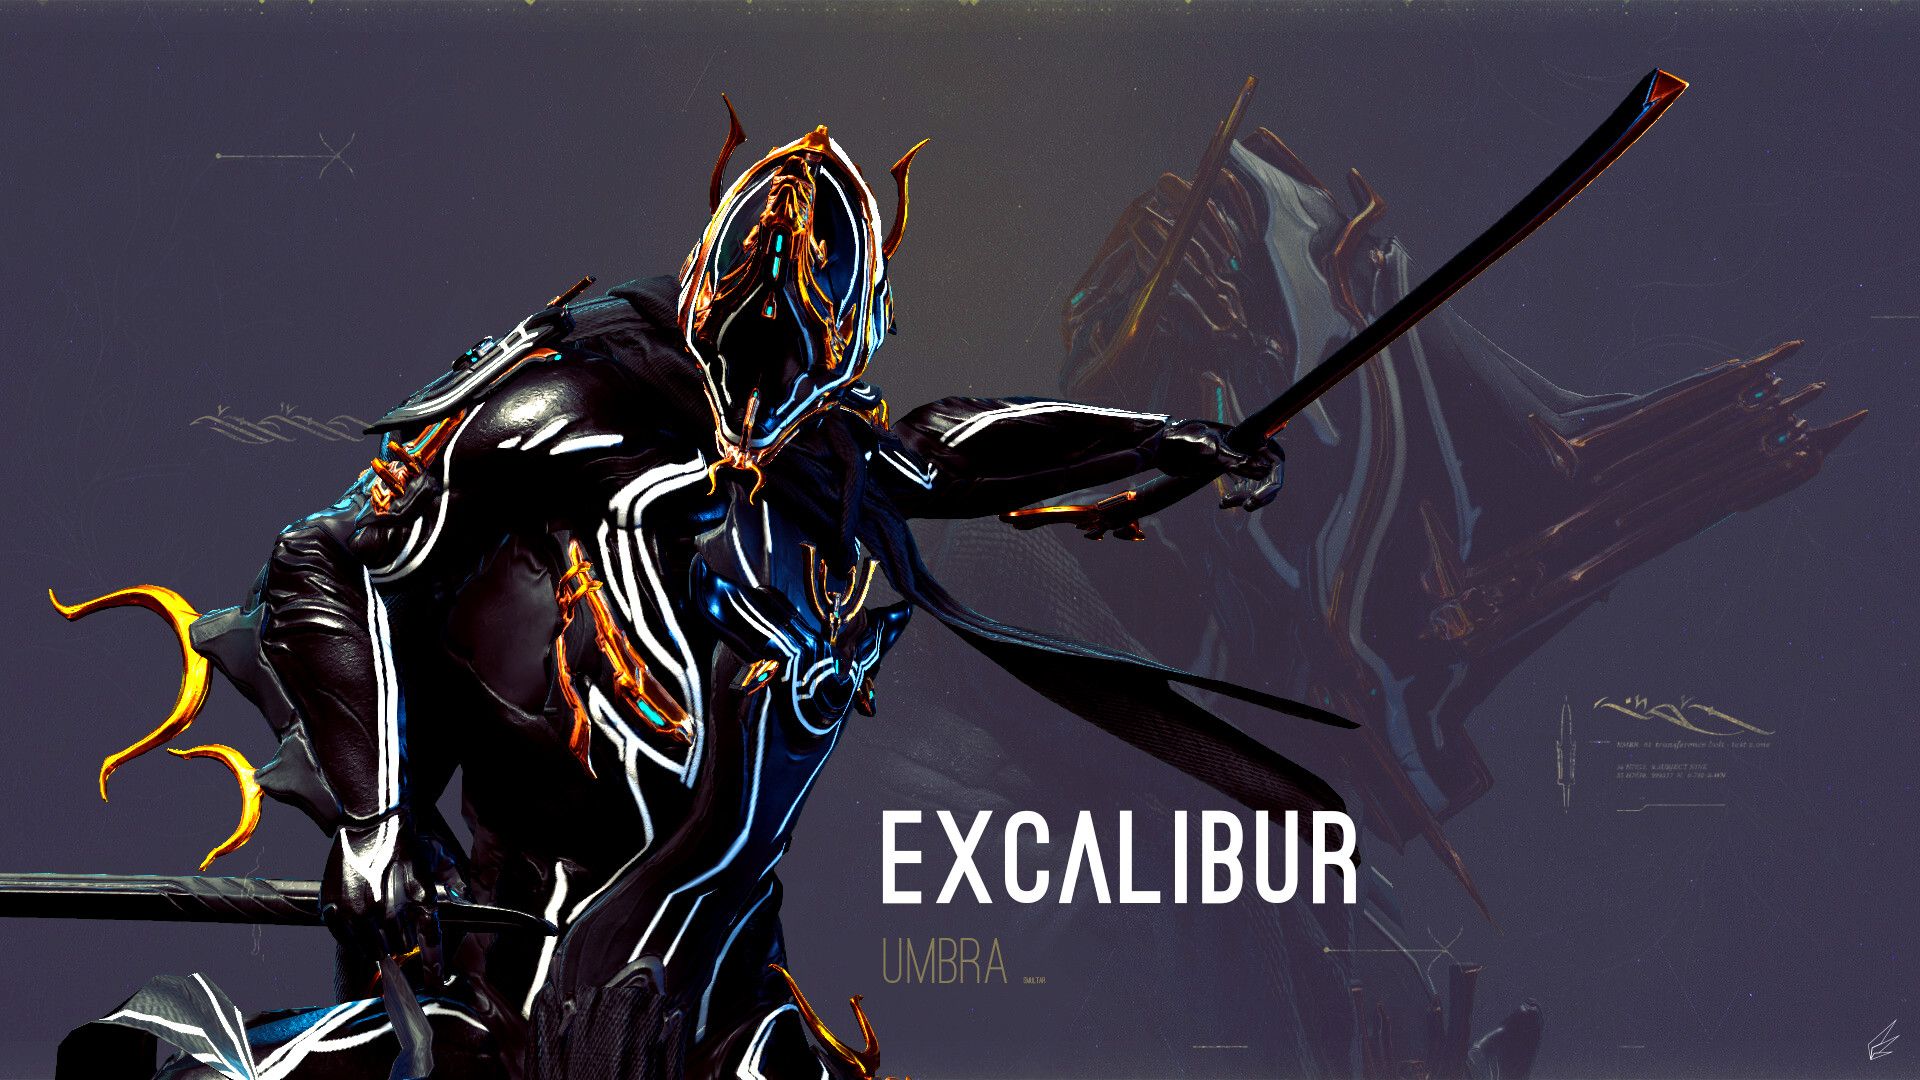 Excalibur Umbra